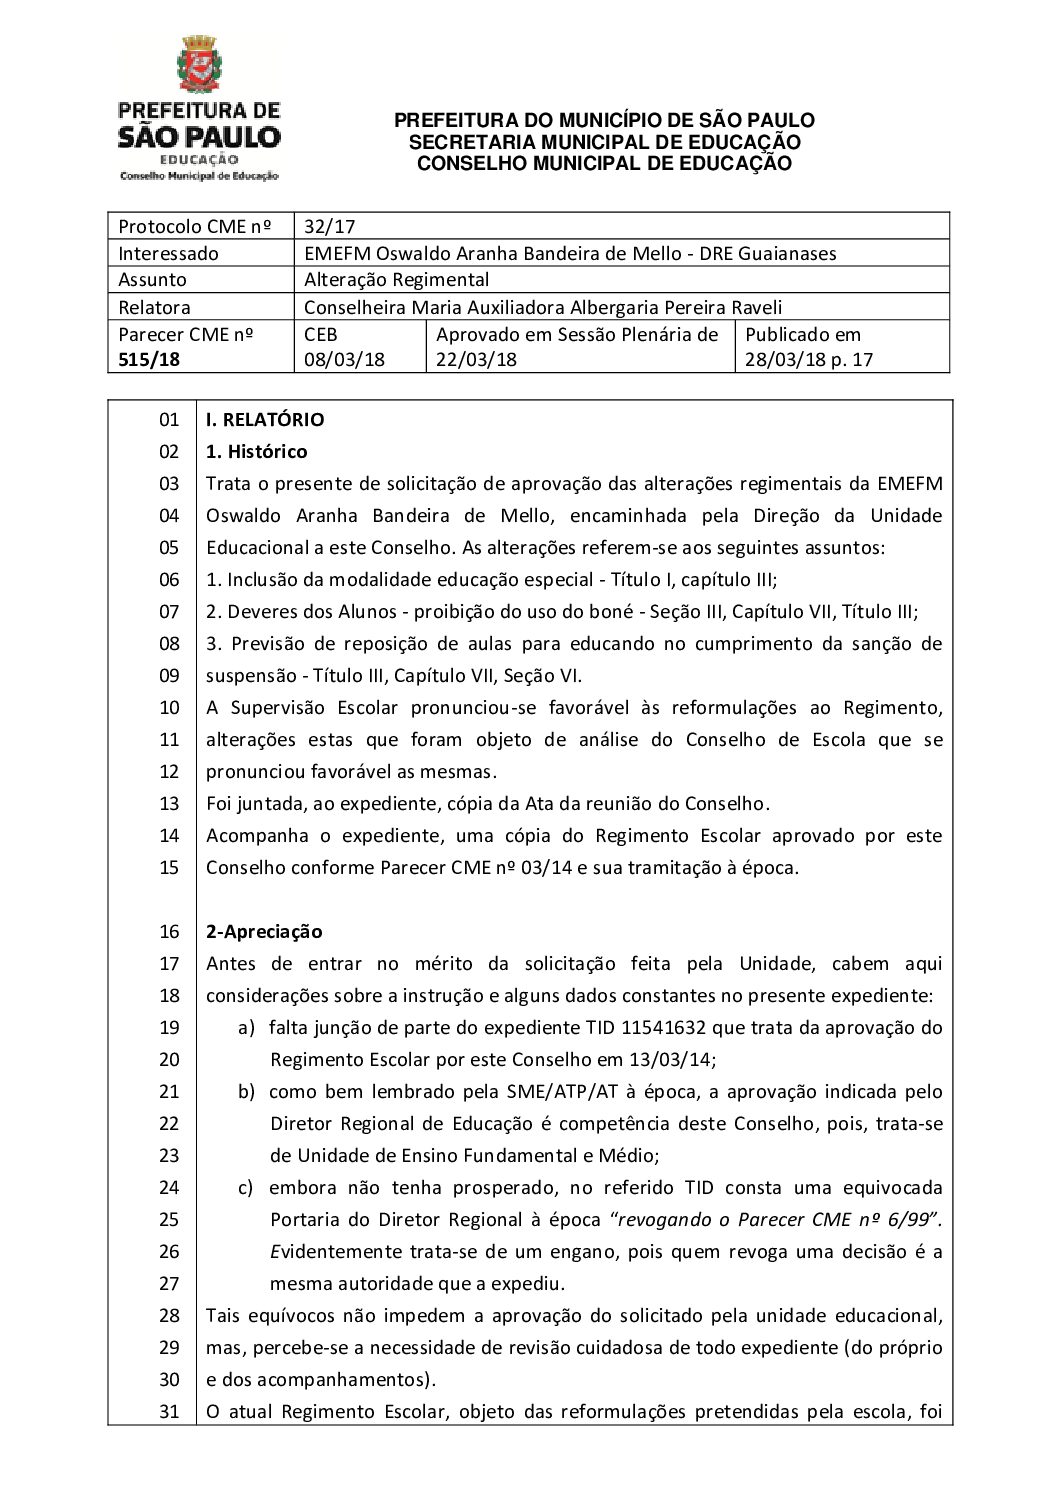 Parecer CME nº 515/2018 - EMEFM Oswaldo Aranha Bandeira de Mello (DRE Guaianases) - Alteração Regimental 